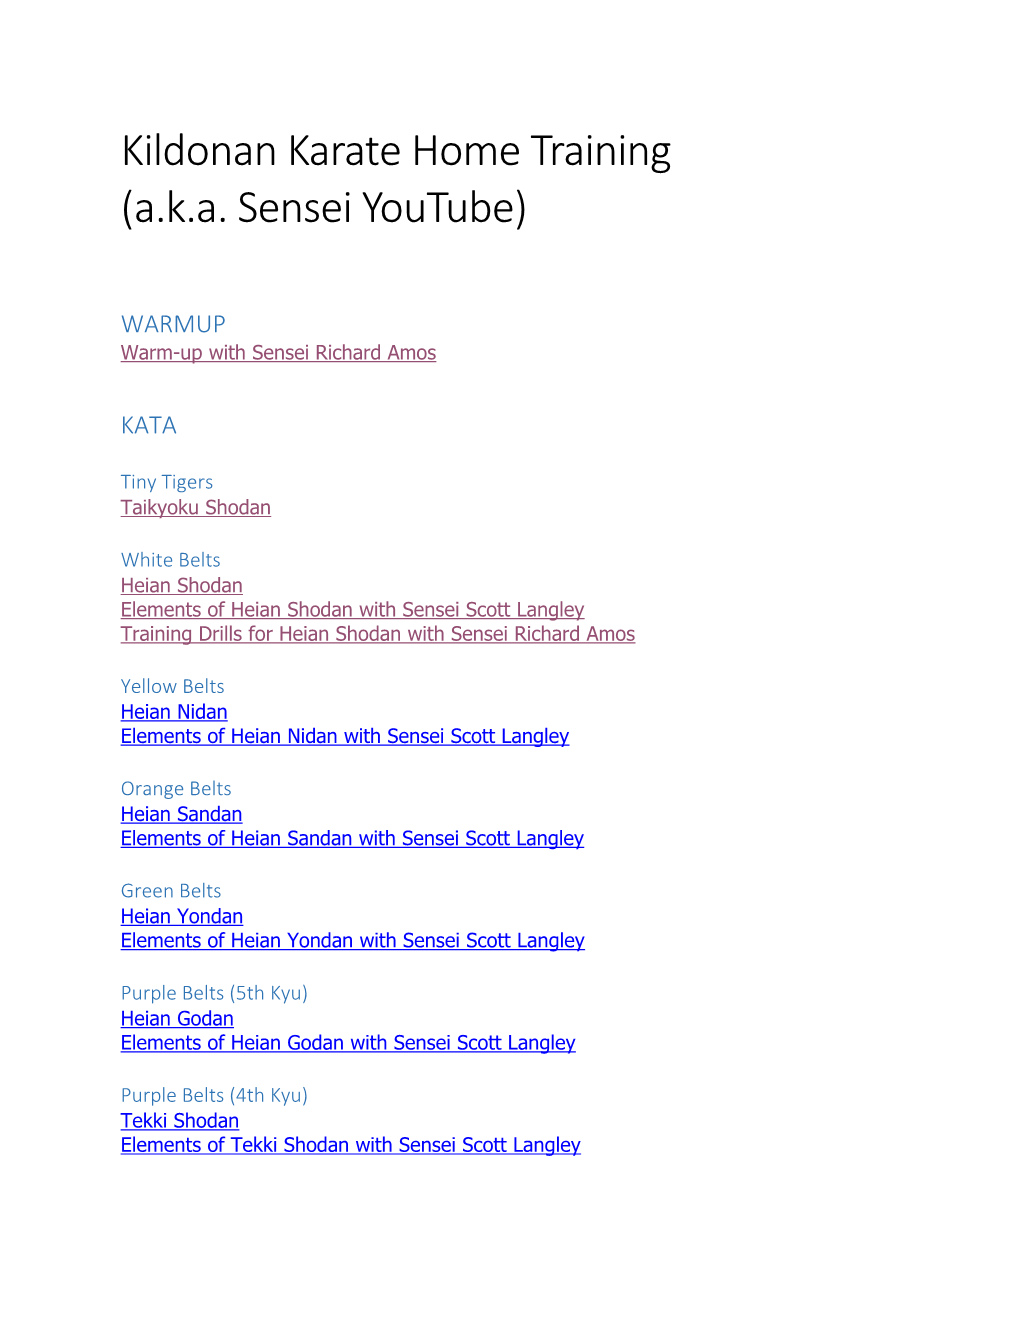 Kildonan Karate Home Training (A.K.A. Sensei Youtube)